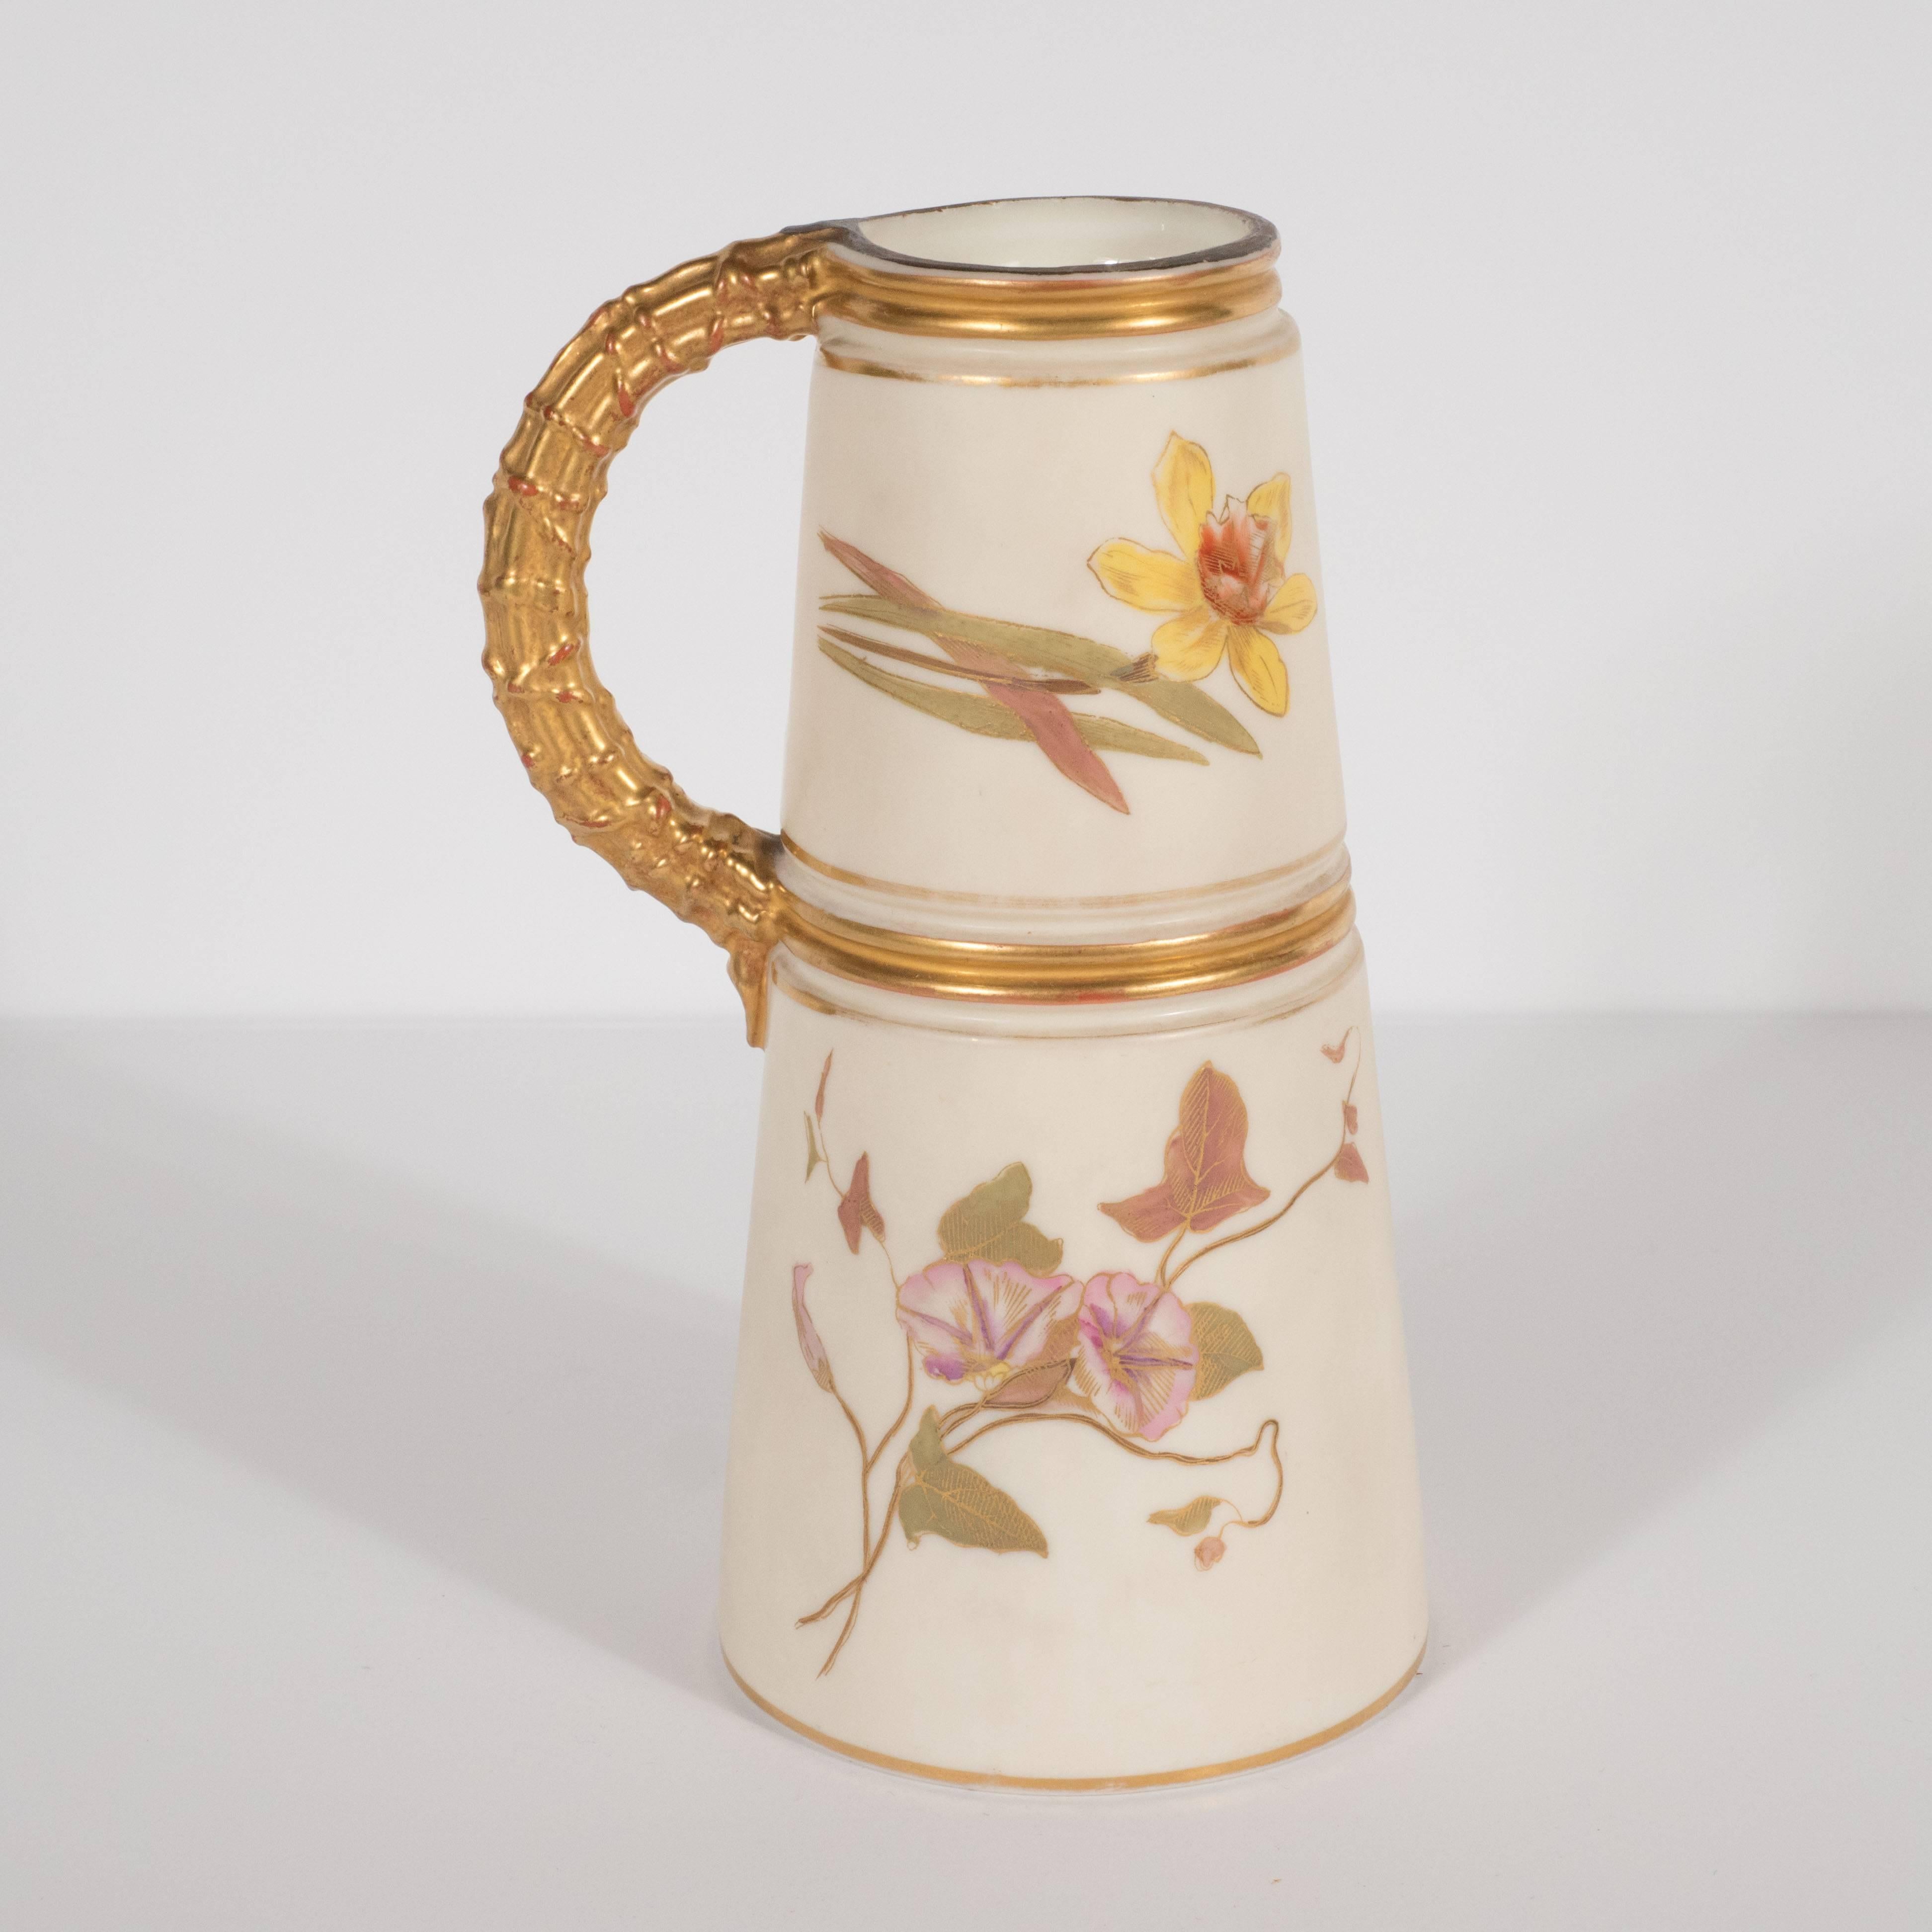 European Hand-Painted Gilded Art Nouveau Bonn Royal Worcester Vase with Floral Motif For Sale